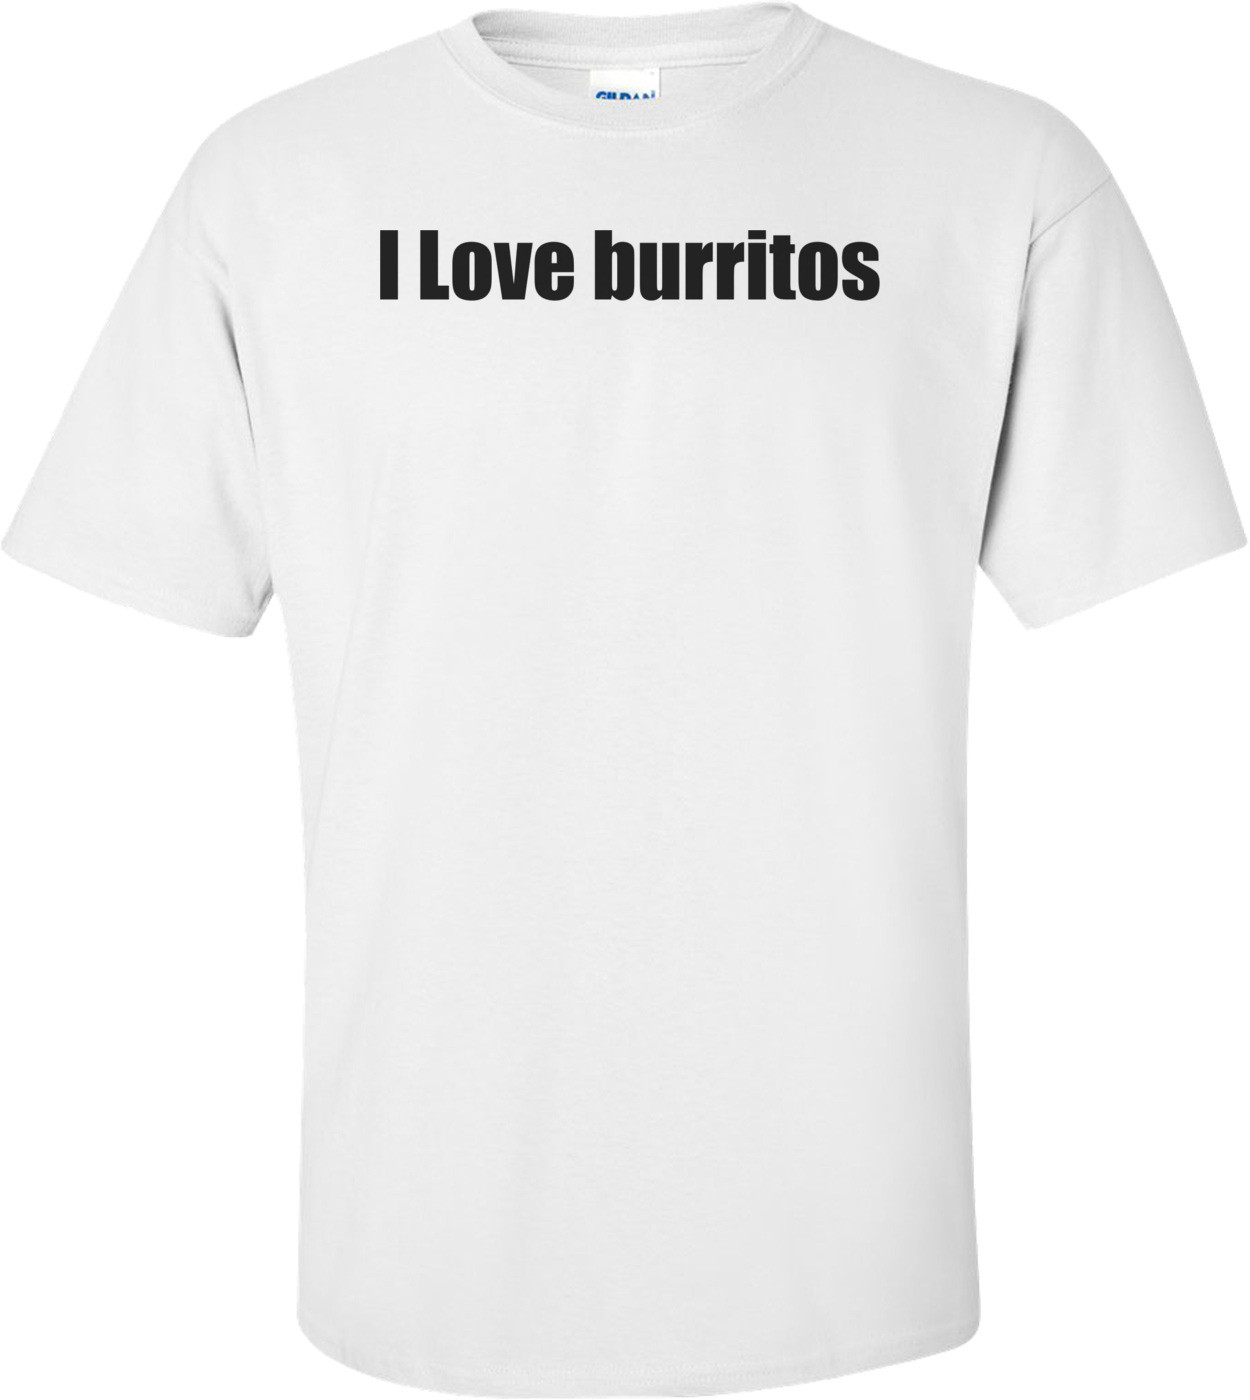 I Love burritos